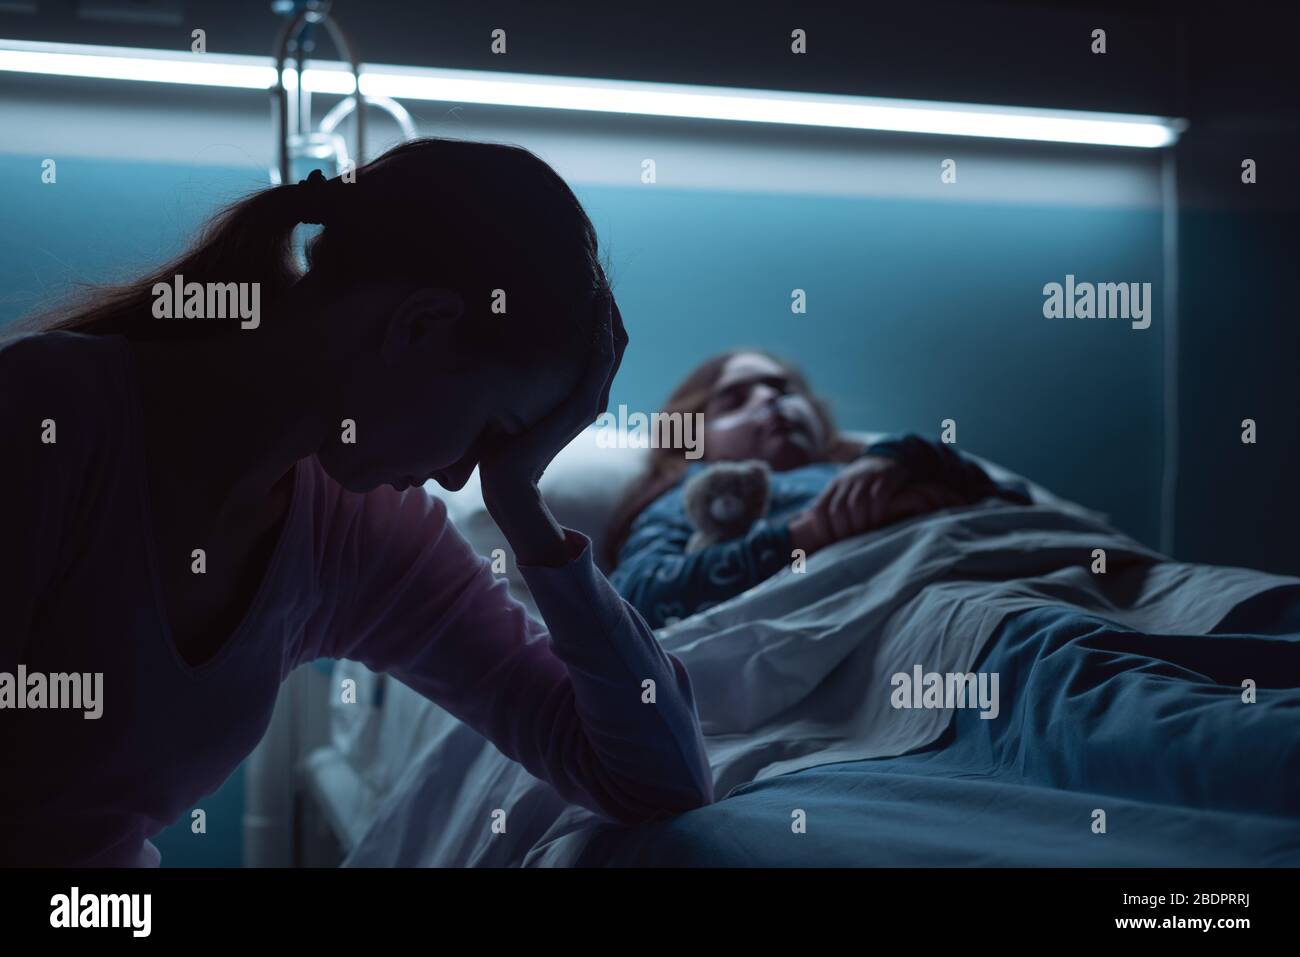 Jeune mère désespérée aidant son enfant malade allongé dans un lit d'hôpital la nuit Banque D'Images